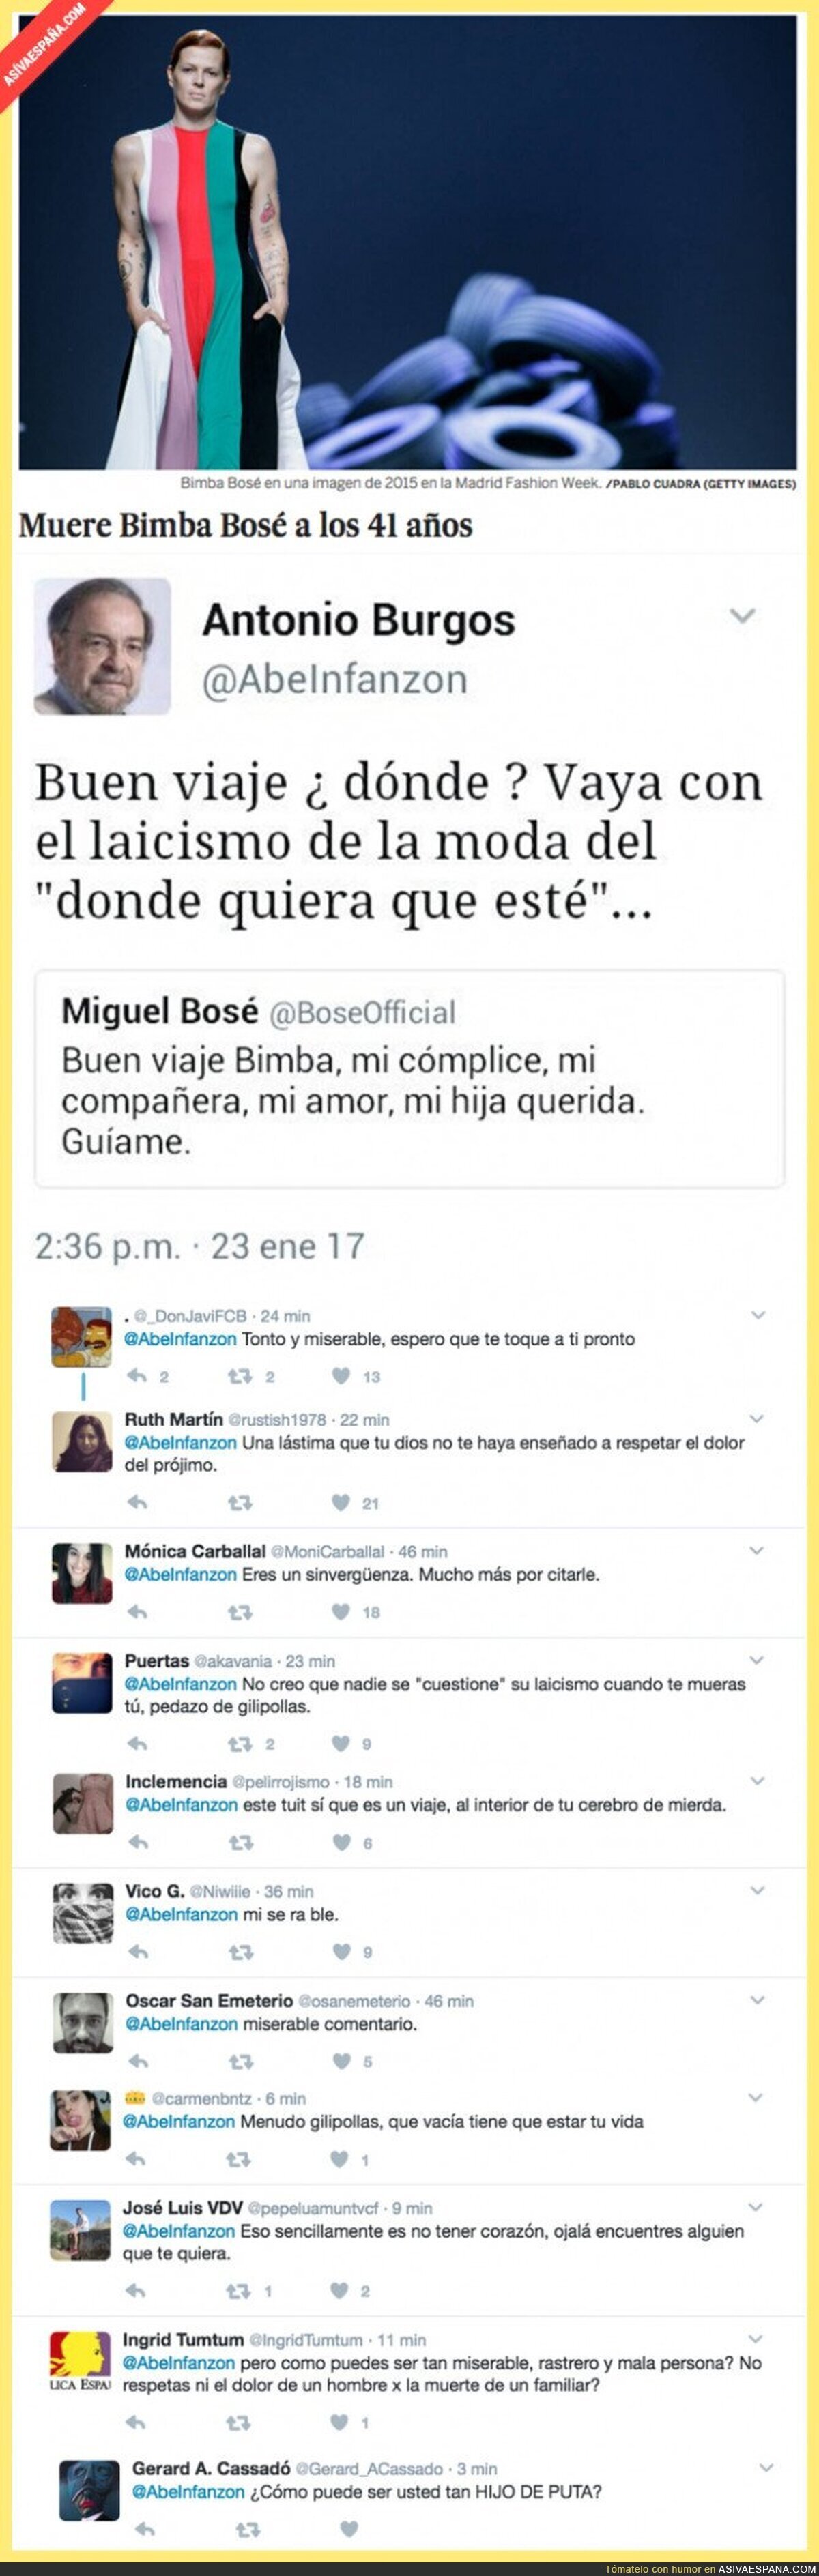 El miserable tuit de Antonio Burgos citando a Miguel Bosé sobre la muerte de Bimba Bosé